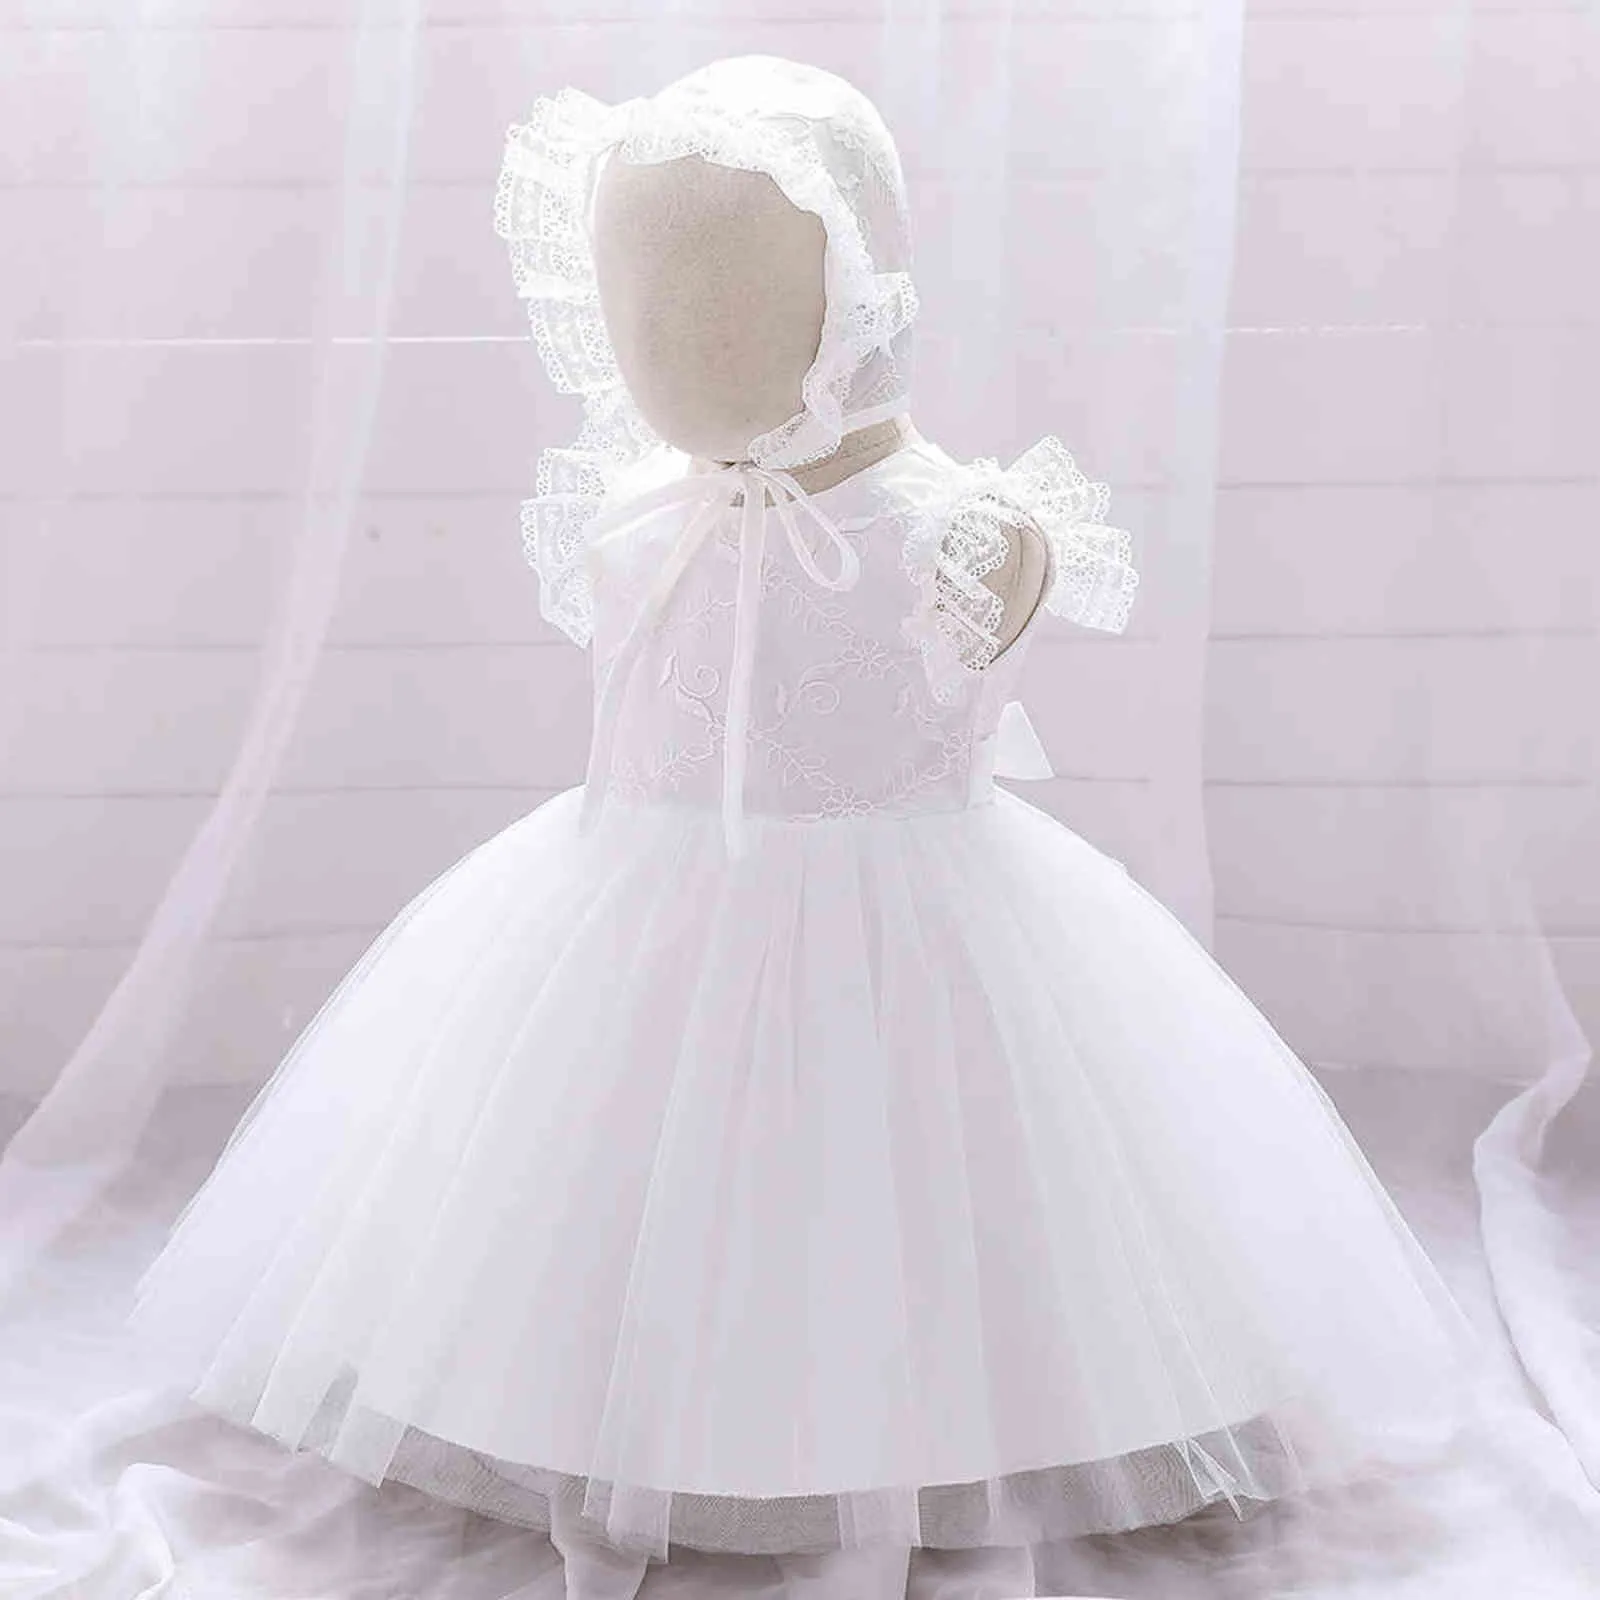 Bébé Fille Robe Robes De Baptême Pour Les Filles 1ère Année Fête D'anniversaire De Mariage Bébé Infant Blanc Baptême Princesse Robe G1129